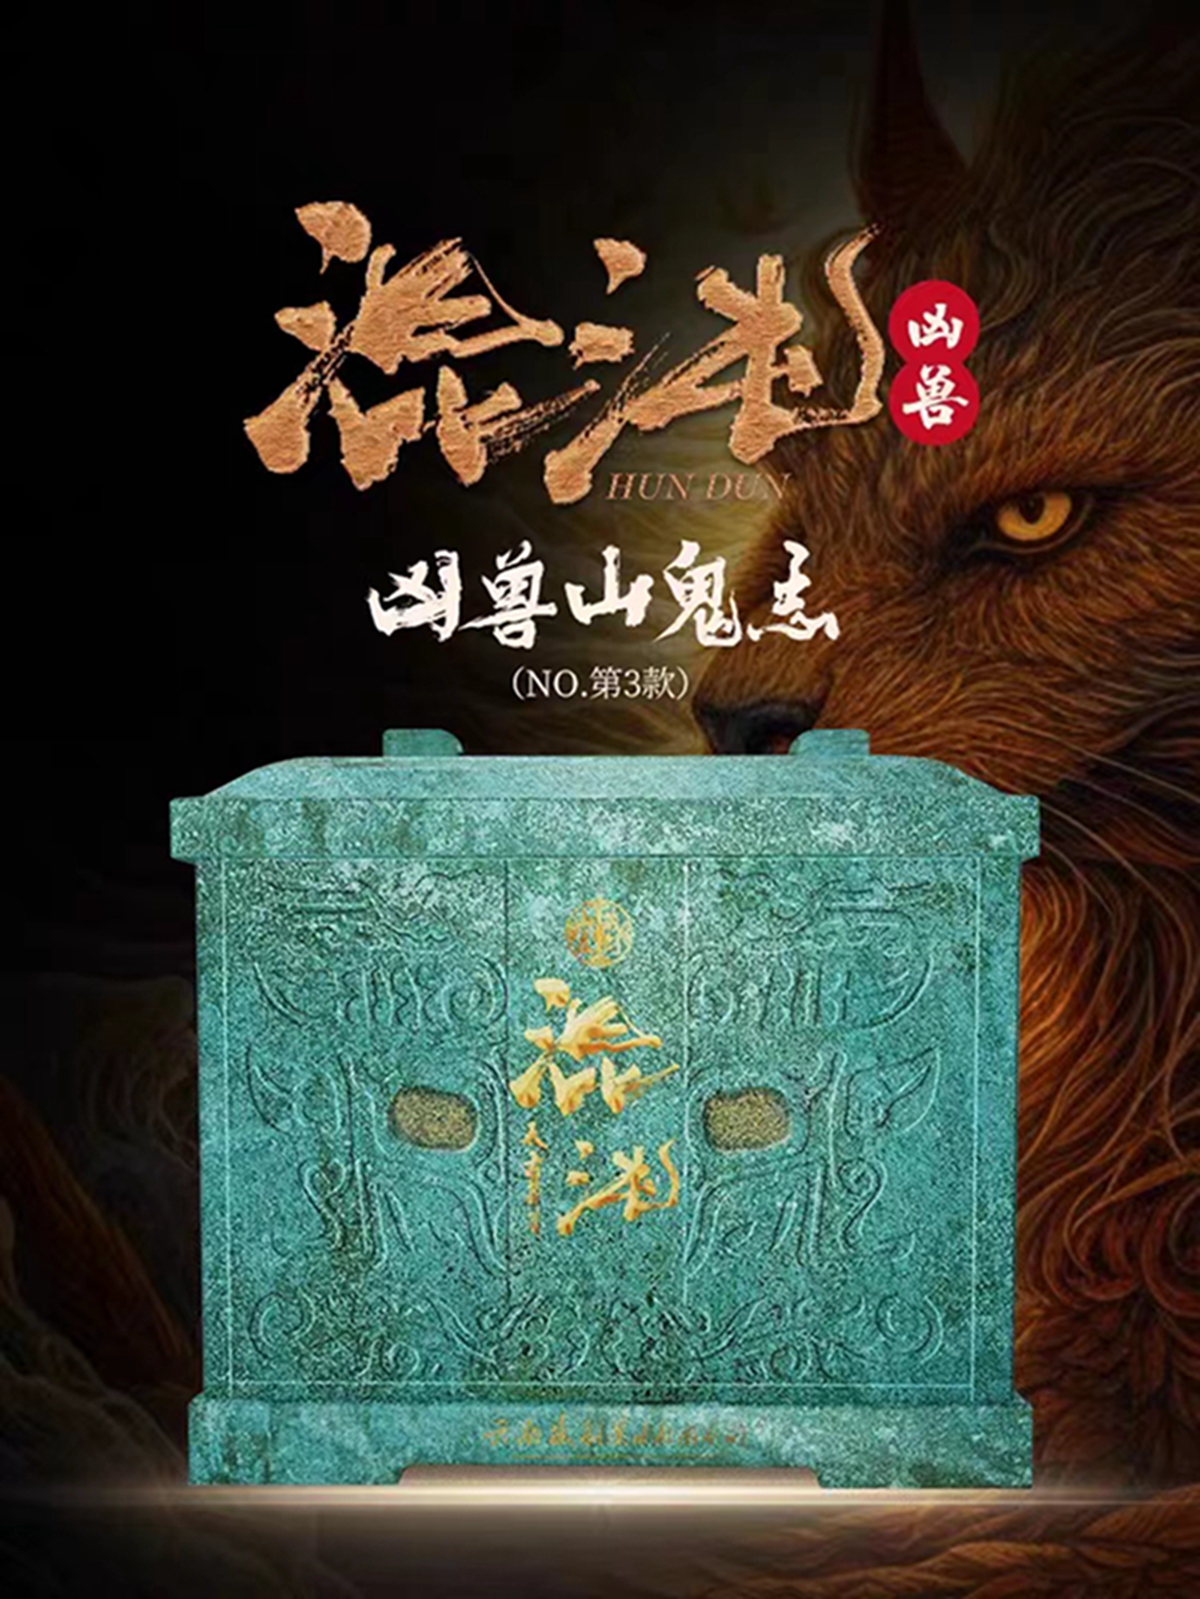 追溯中国历史文化神迹作品！凶兽混沌正式揭开封印！